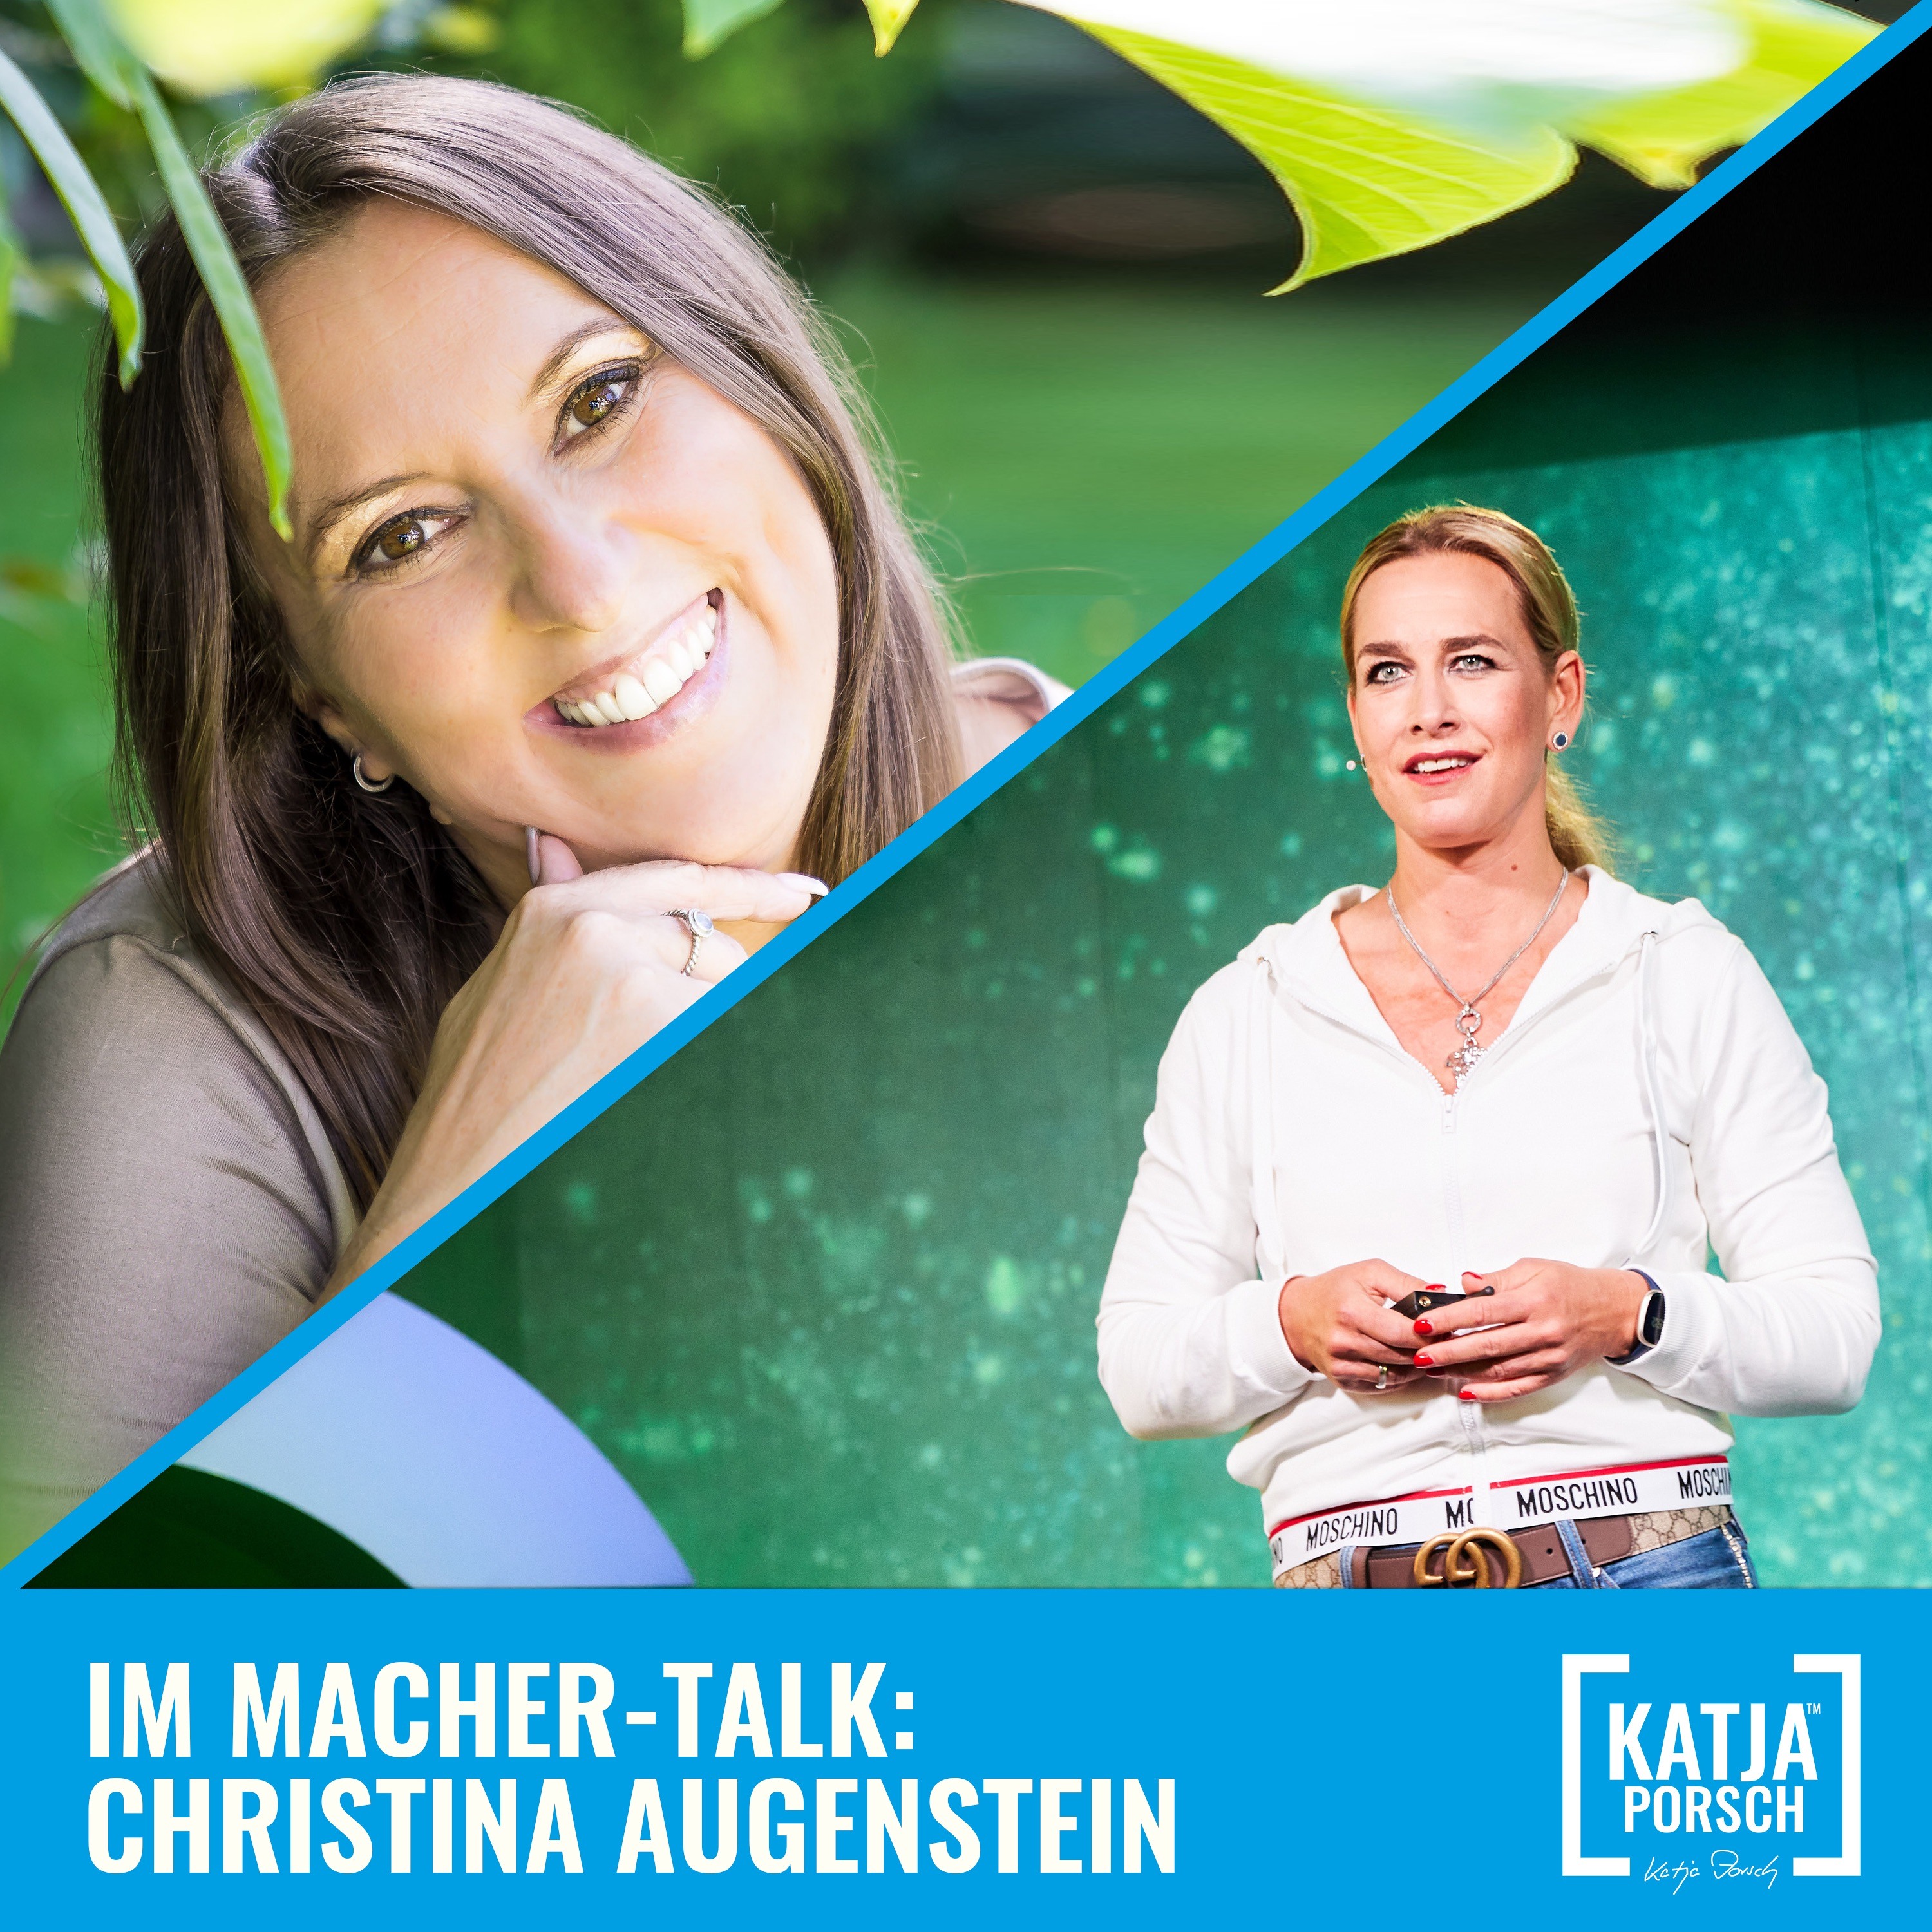 Macher-Talk mit Christina Augenstein - endlich ein leichtes Leben!